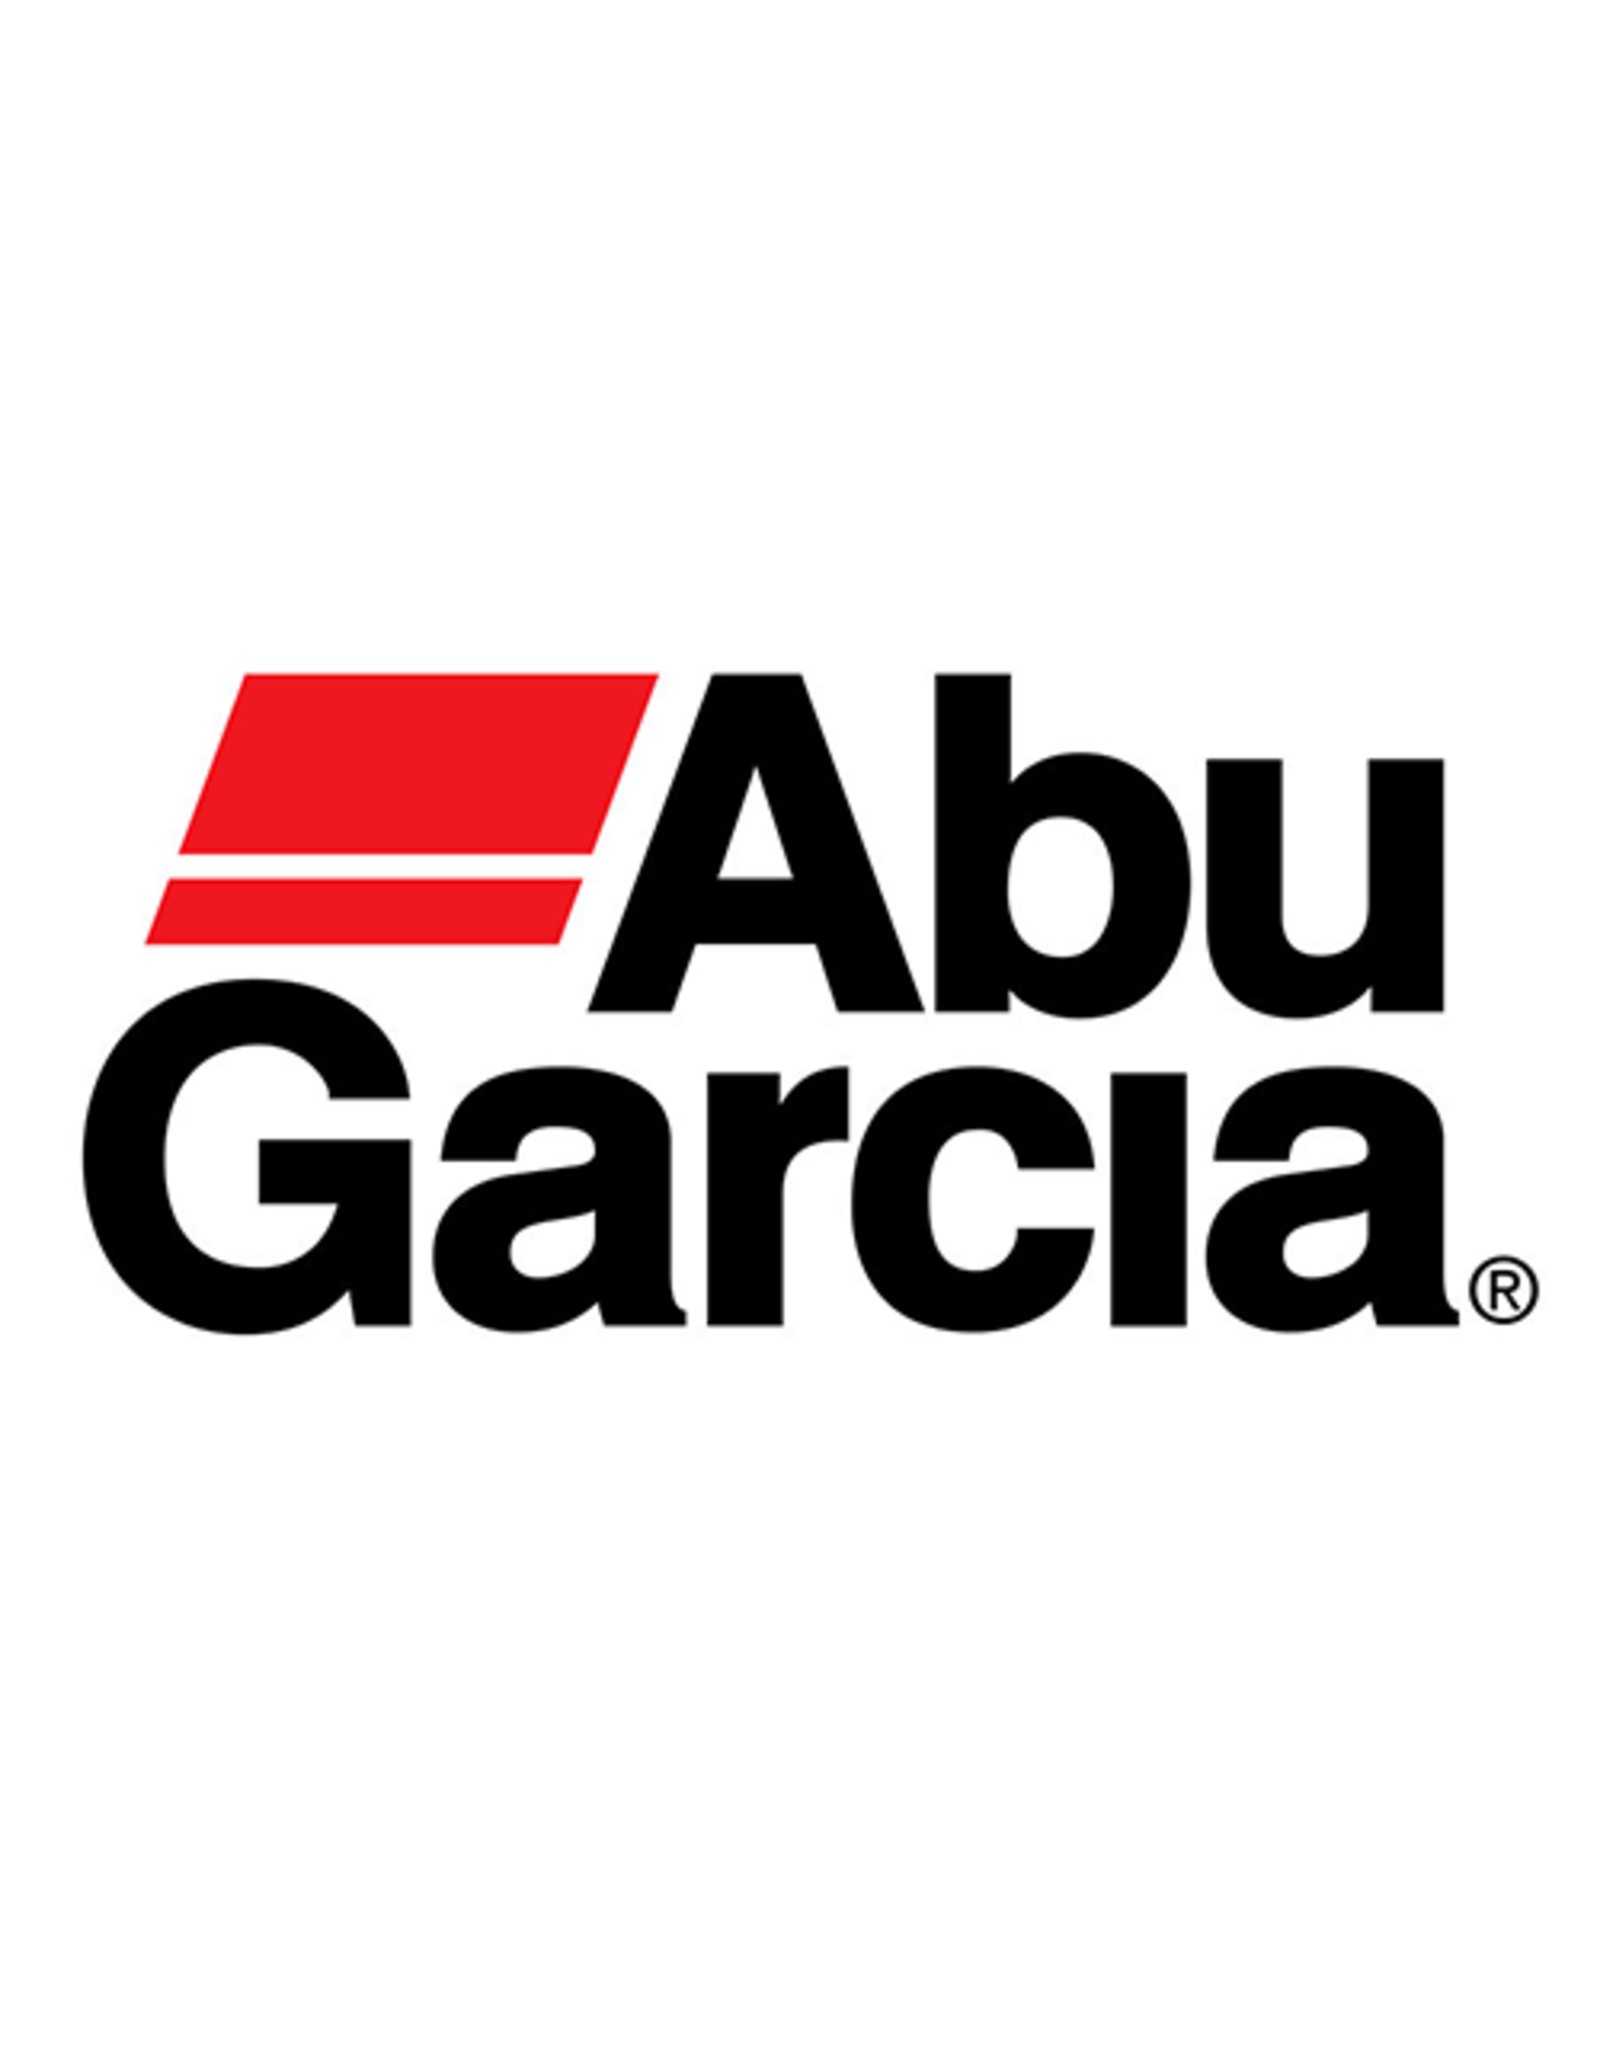 Abu Garcia 1344512  BRAKE CENTER